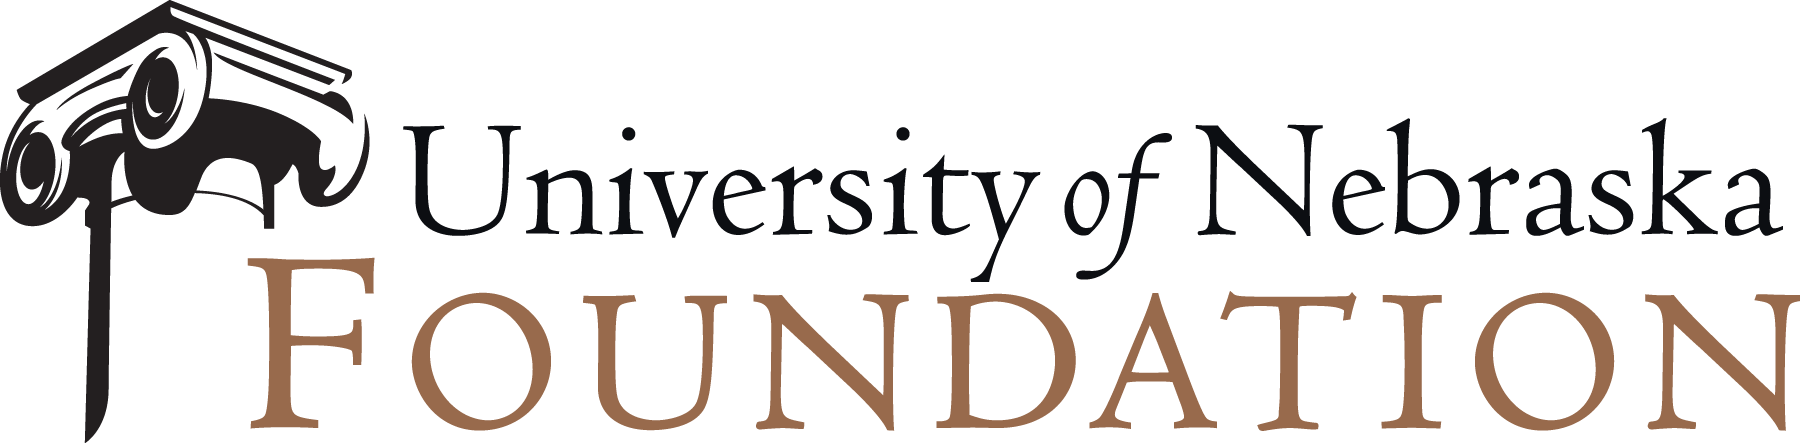 University of Nebraska Foundation .png